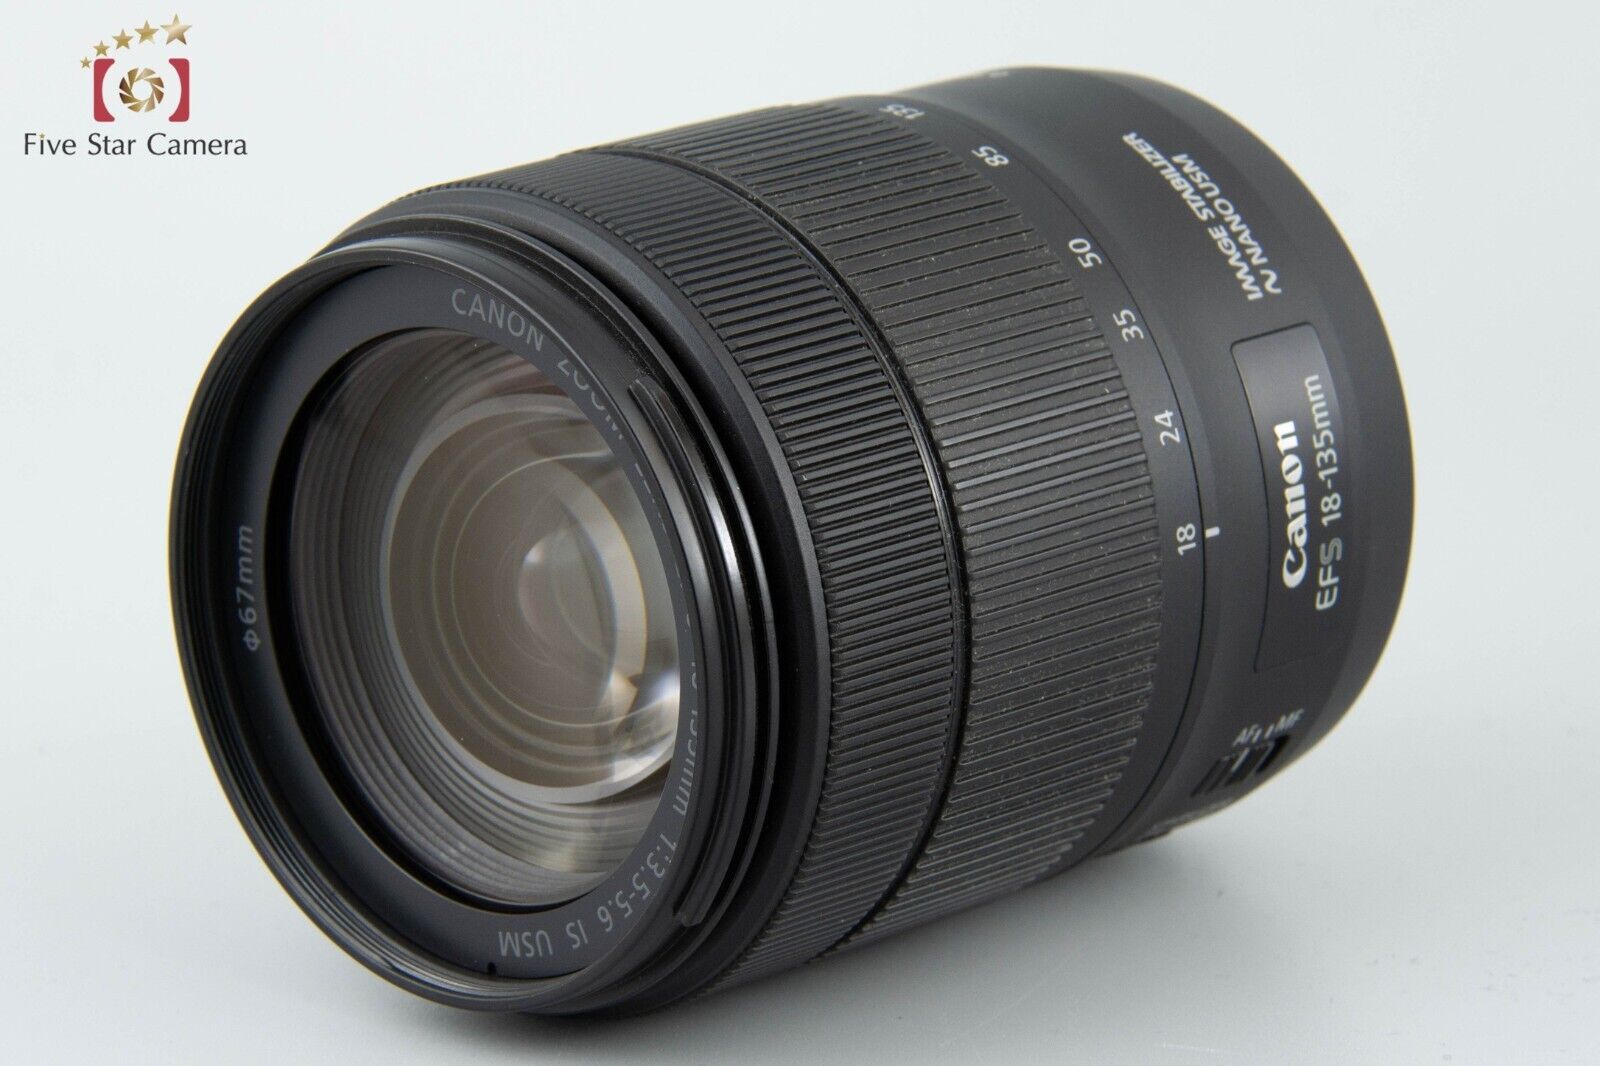 Excellent!! Canon EOS 9000D 24.2 MP Digital SLR EF-S 18-135 Lens w/ Box